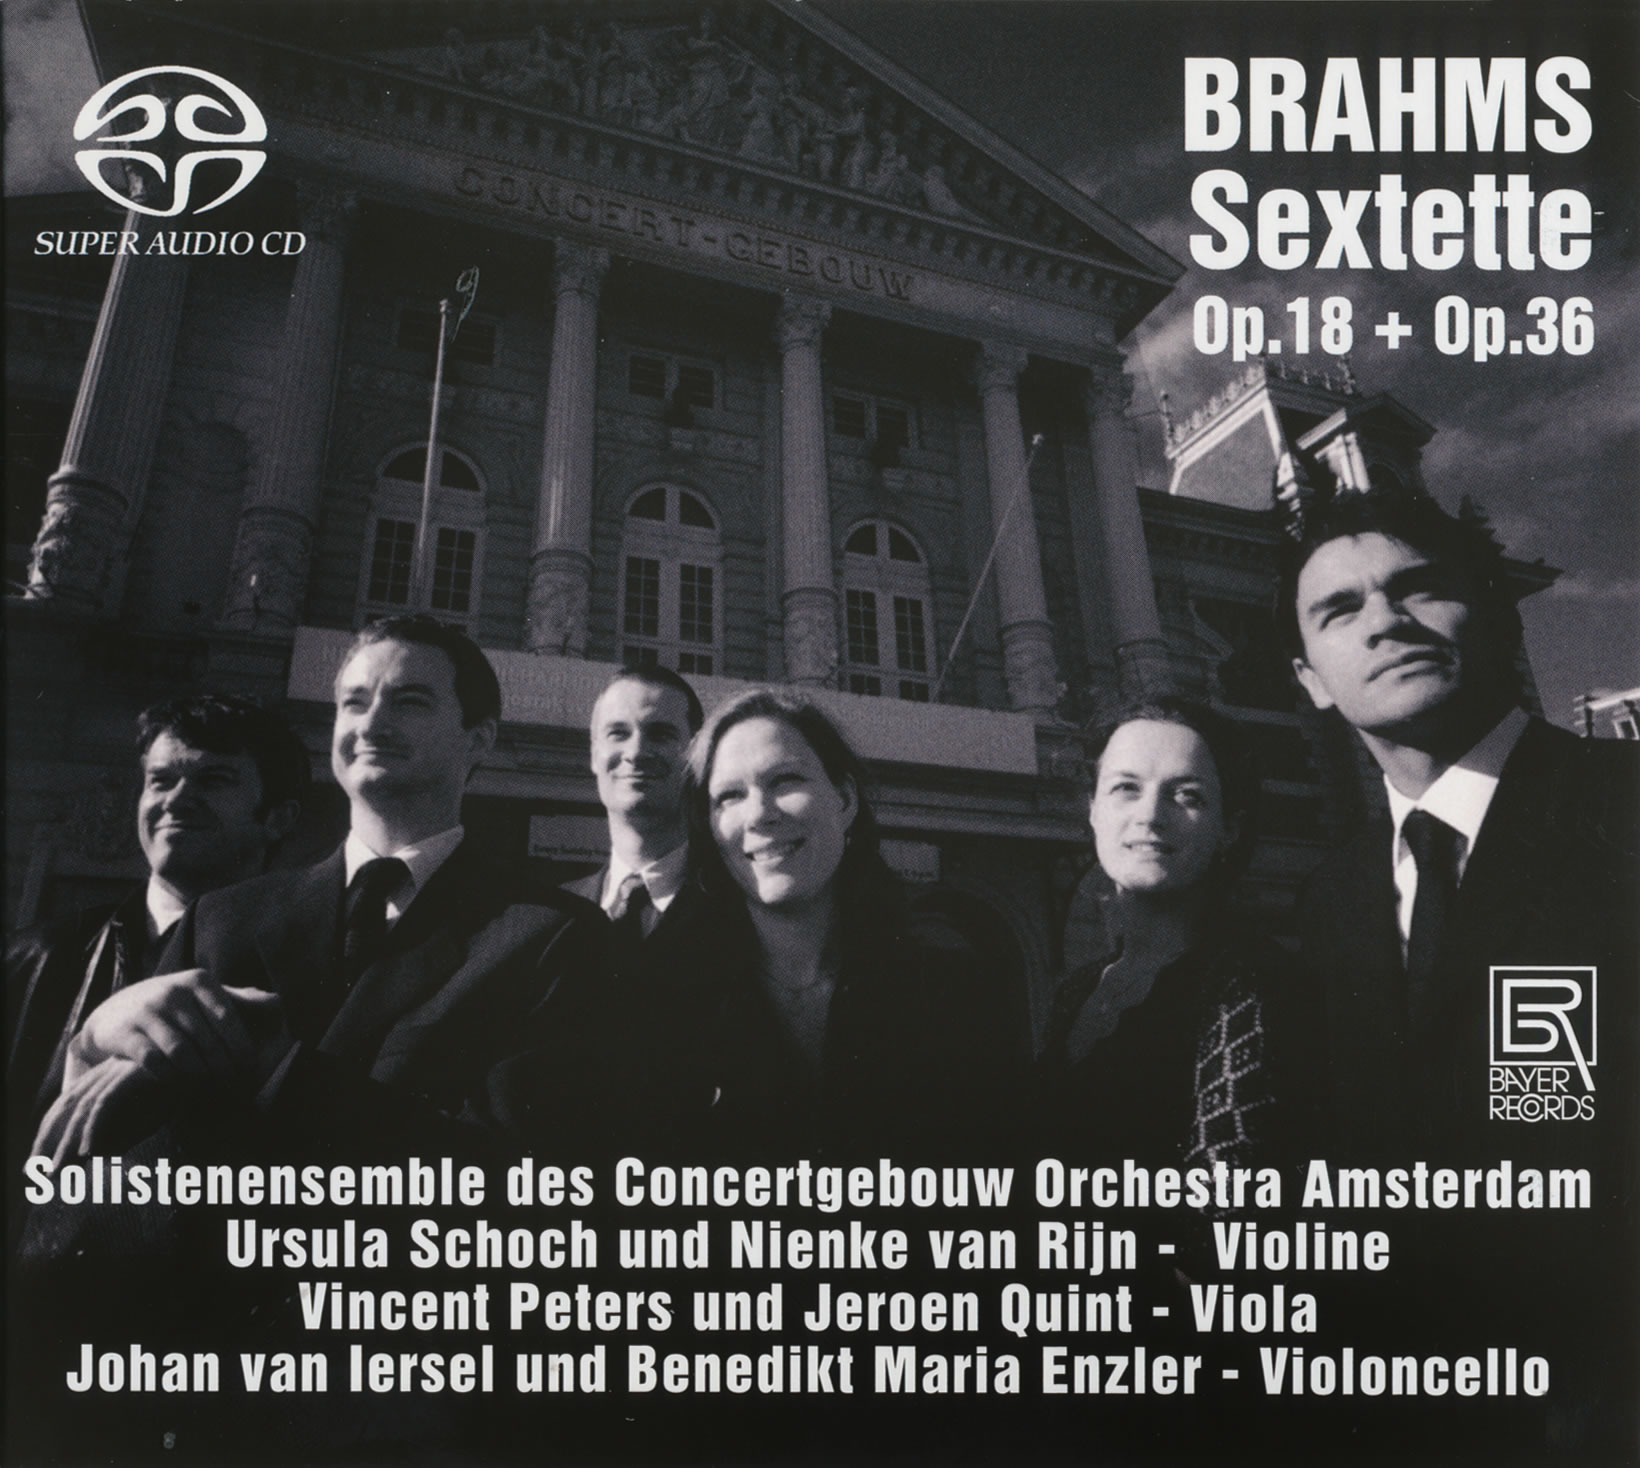 Brahms Sextette Op,18 + Op. 36